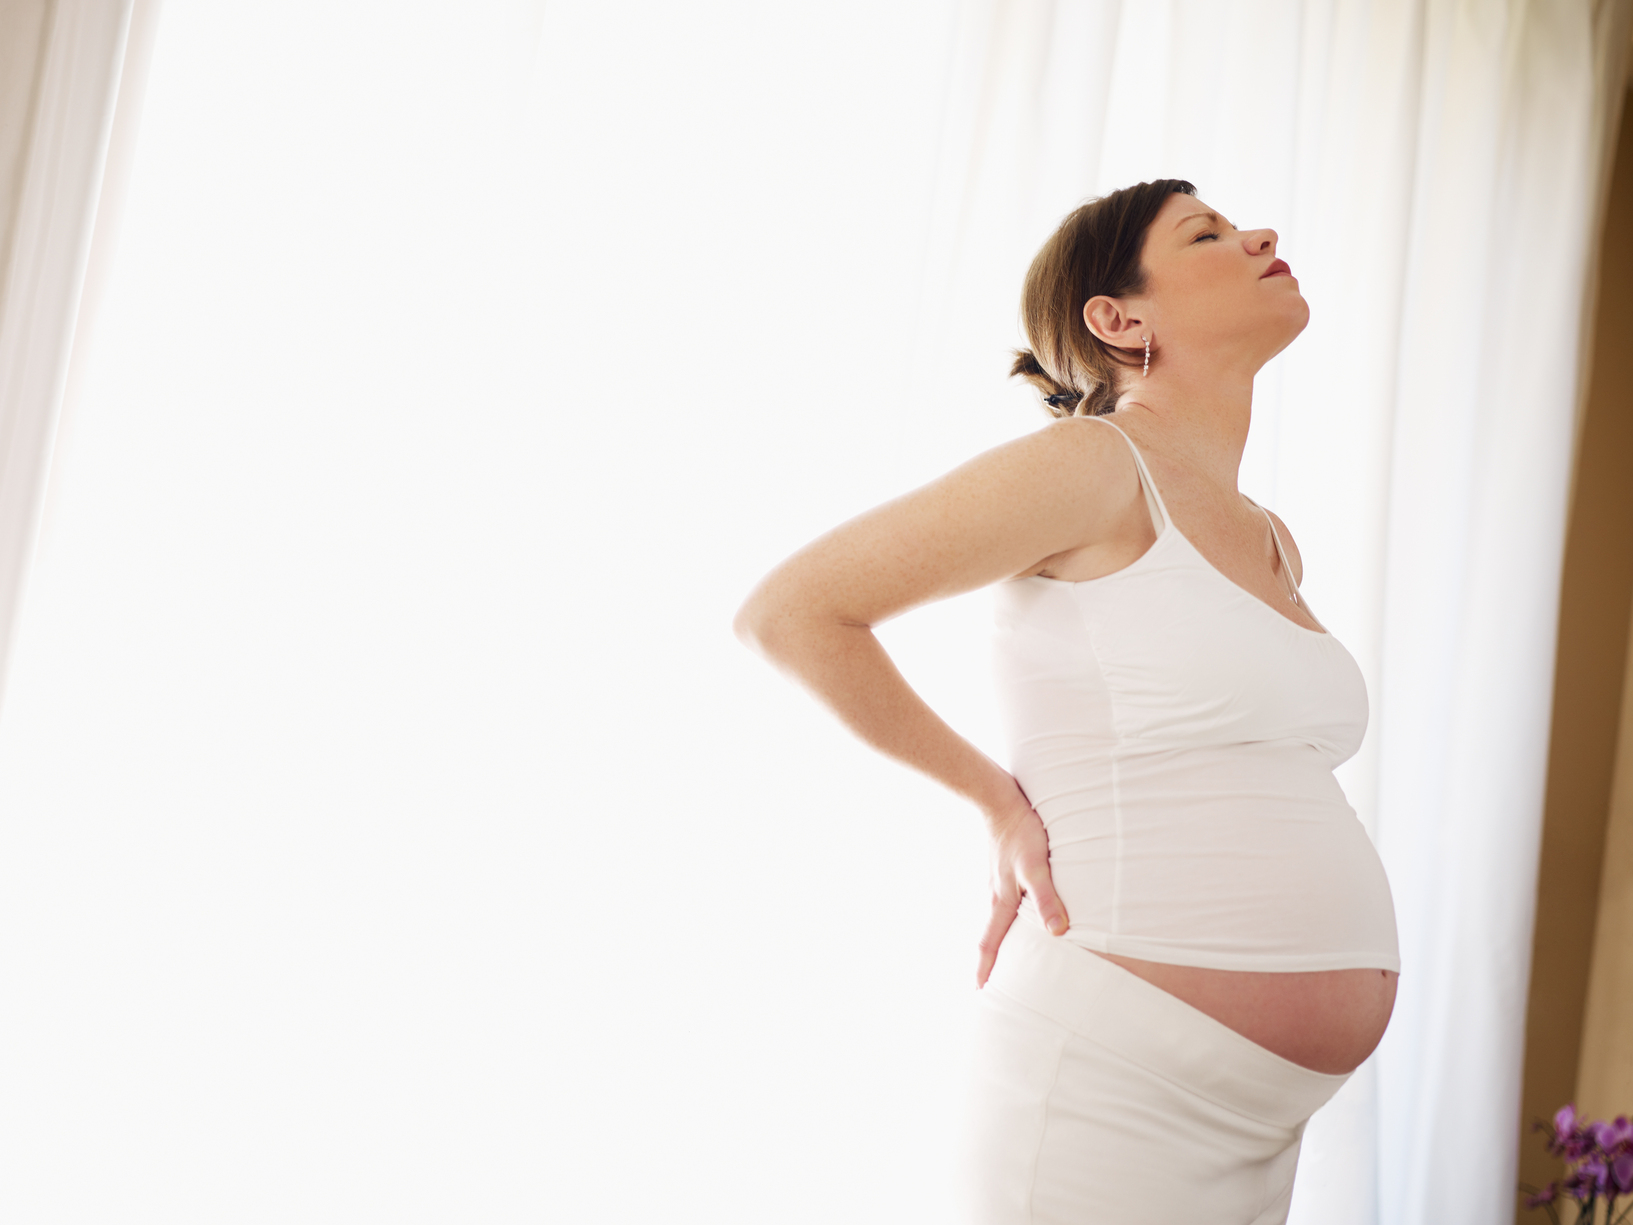 Is trenni kusnierek pregnant 🍓 Nikki Phillips debuts her 34 